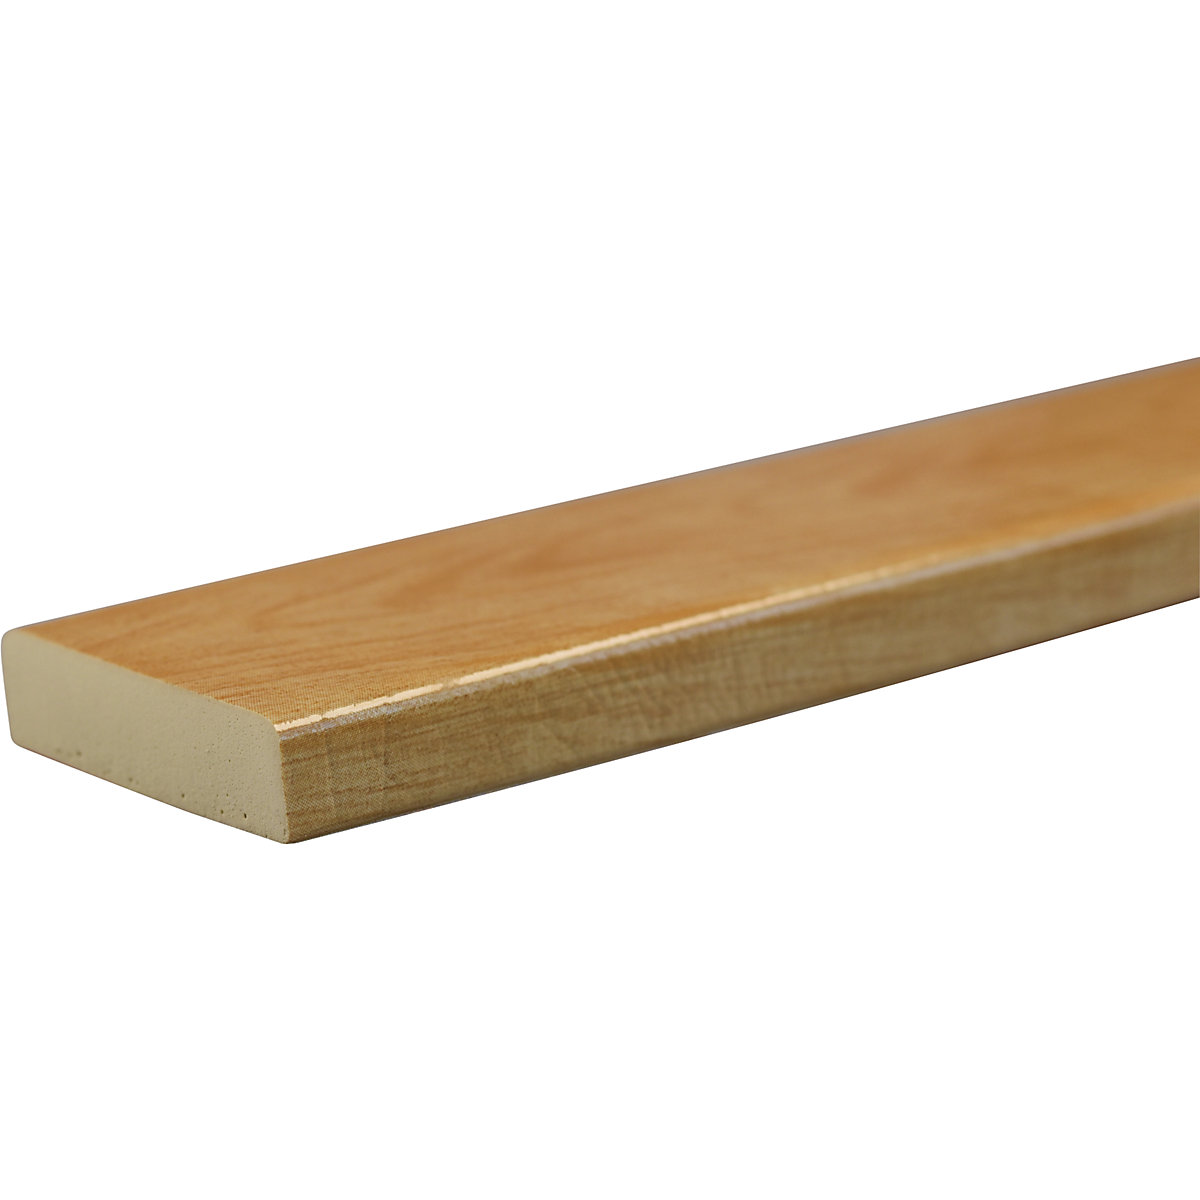 SHG – Proteção de superfícies Knuffi®, tipo S, unidade de 1 m, imitação de madeira natural